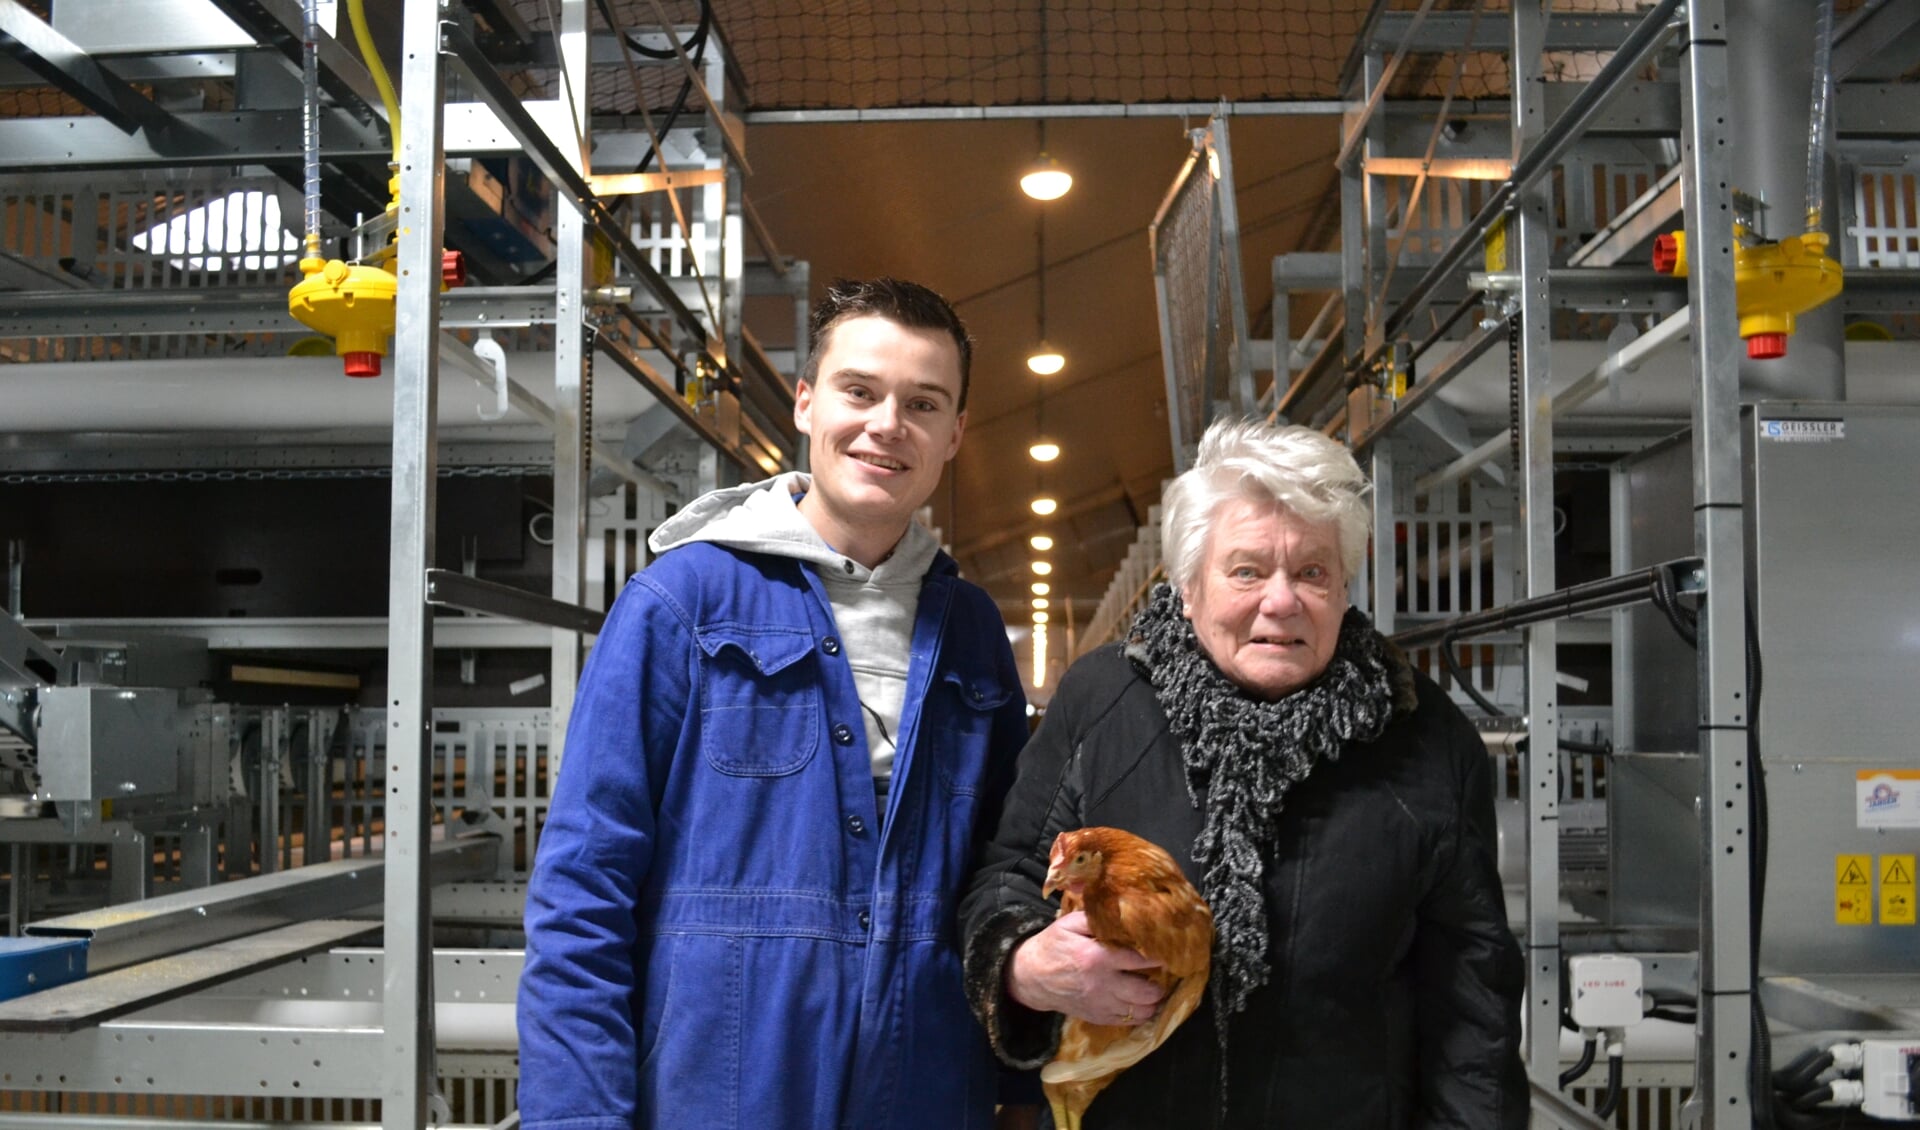 Stijn Peters met zijn oma. Zij begon in 1970 met de verkoop van eieren. De kippen van haar kleinzoon leggen er inmiddels zo'n 20.000 per dag. Foto: Aangeleverd